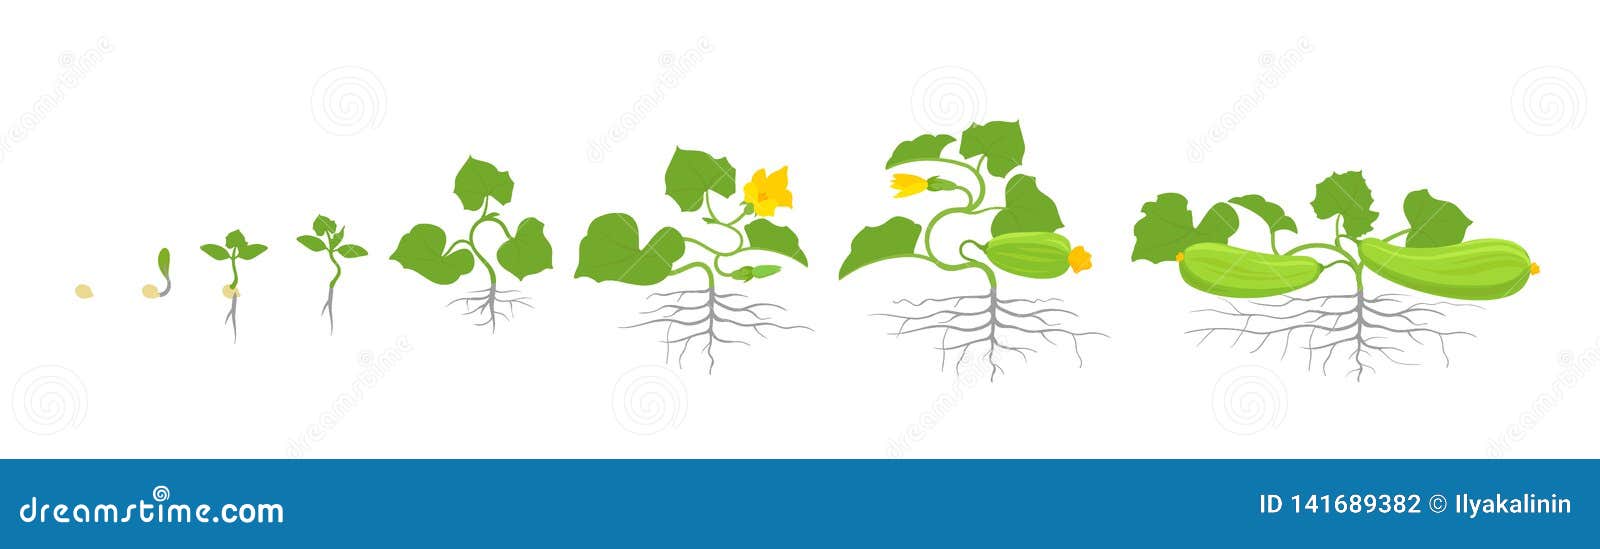 호박 성장 단계 : 호박이 얼마나 빨리 성장합니까?